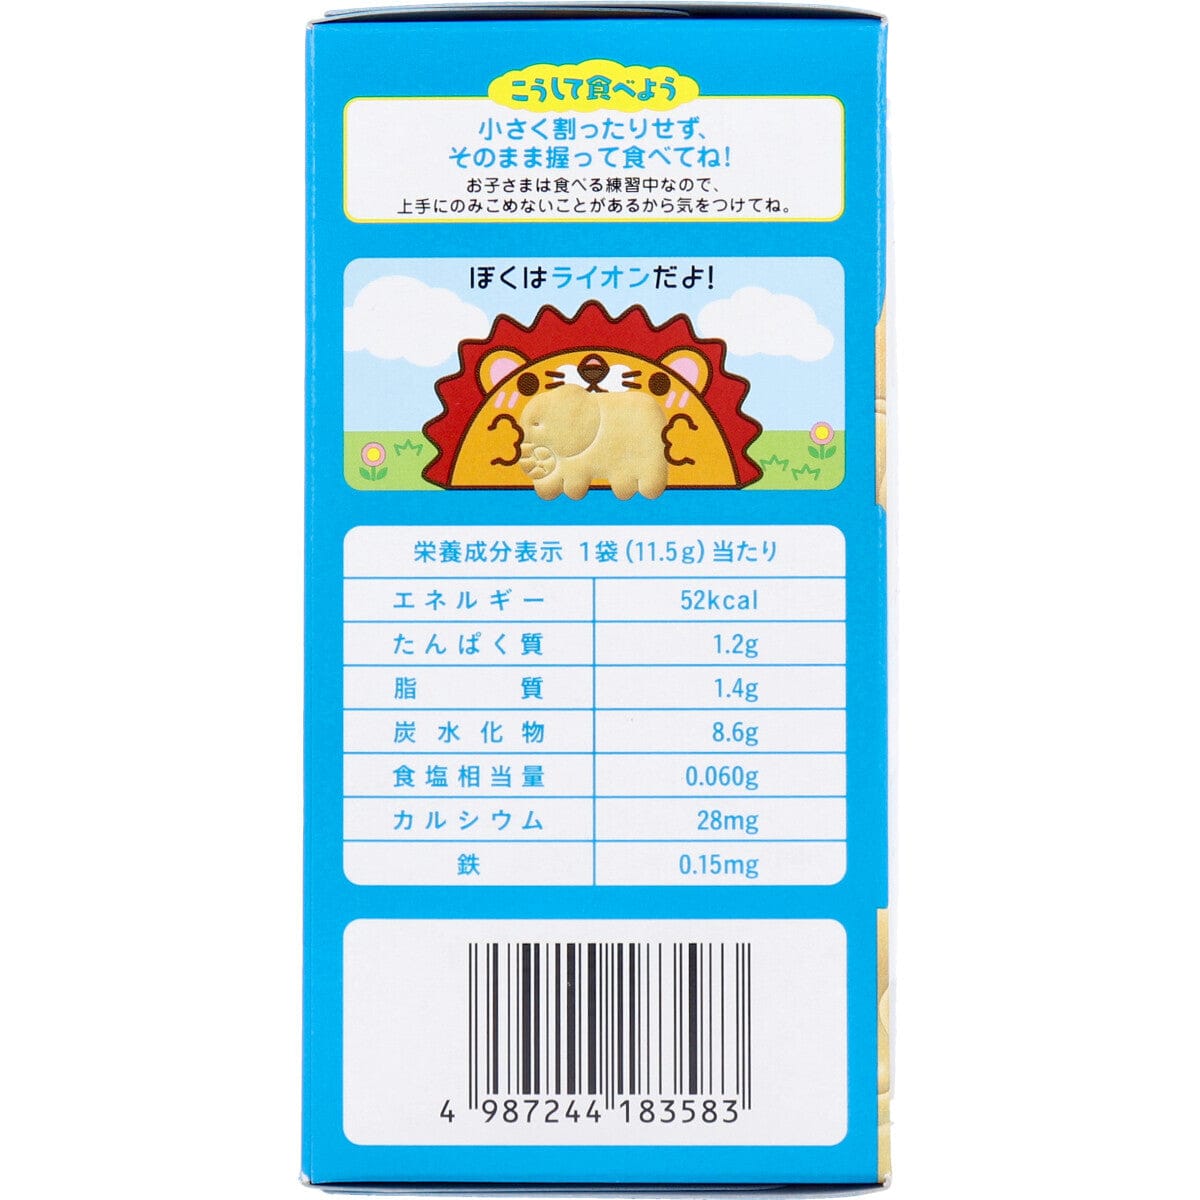 Wakodo - Baby Snacks + Ca Animal Shaped Biscuits 11.5g x 3 bags WAK1007 CherryAffairs